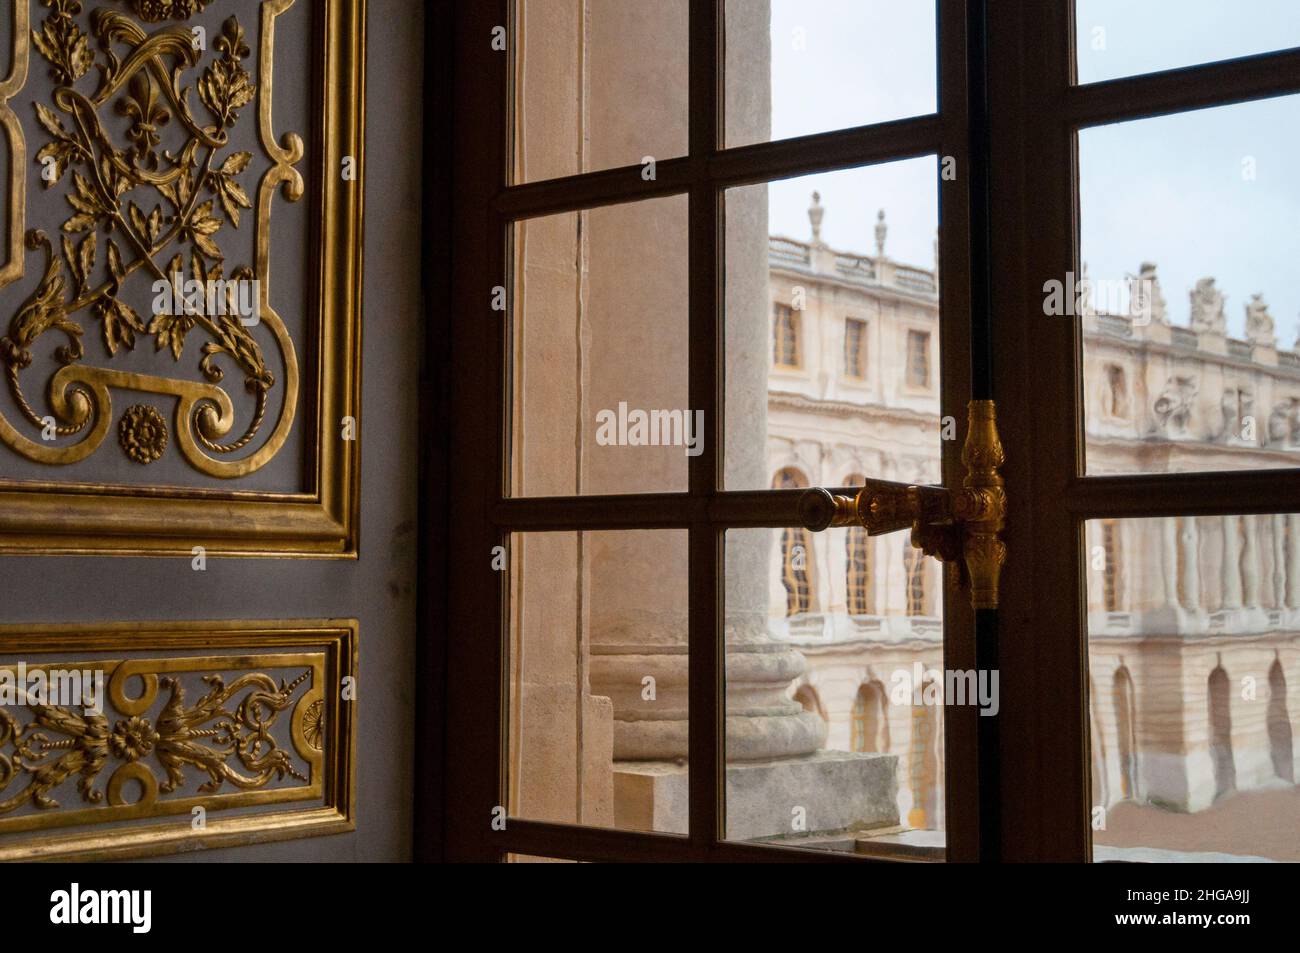 Ein verriegeltes Fenster im Schloss Versailles in Paris, eingerahmt von vergoldeten Basreliefverzierungen, Frankreich. Stockfoto